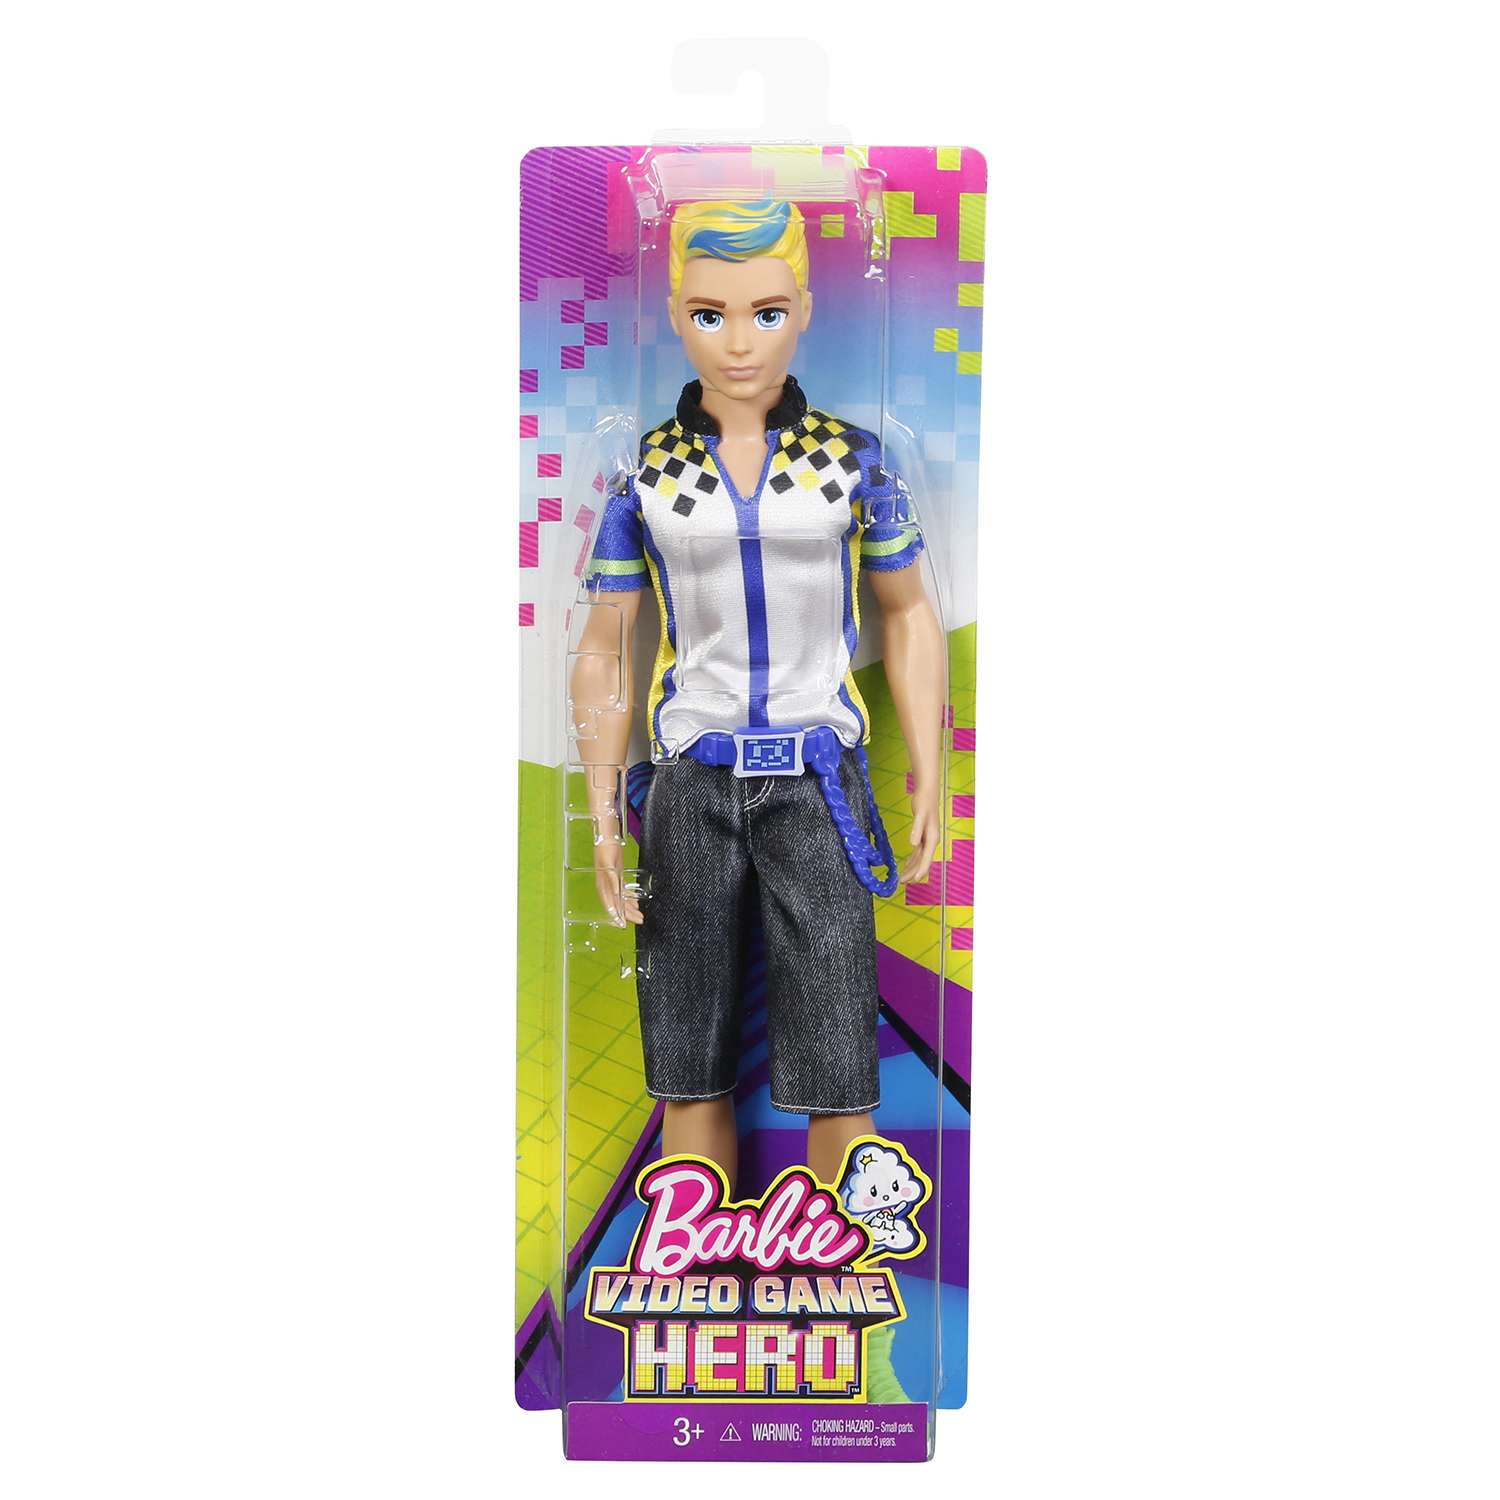 Кукла Barbie Кен из серии Виртуальный мир DTW09 - фото 2